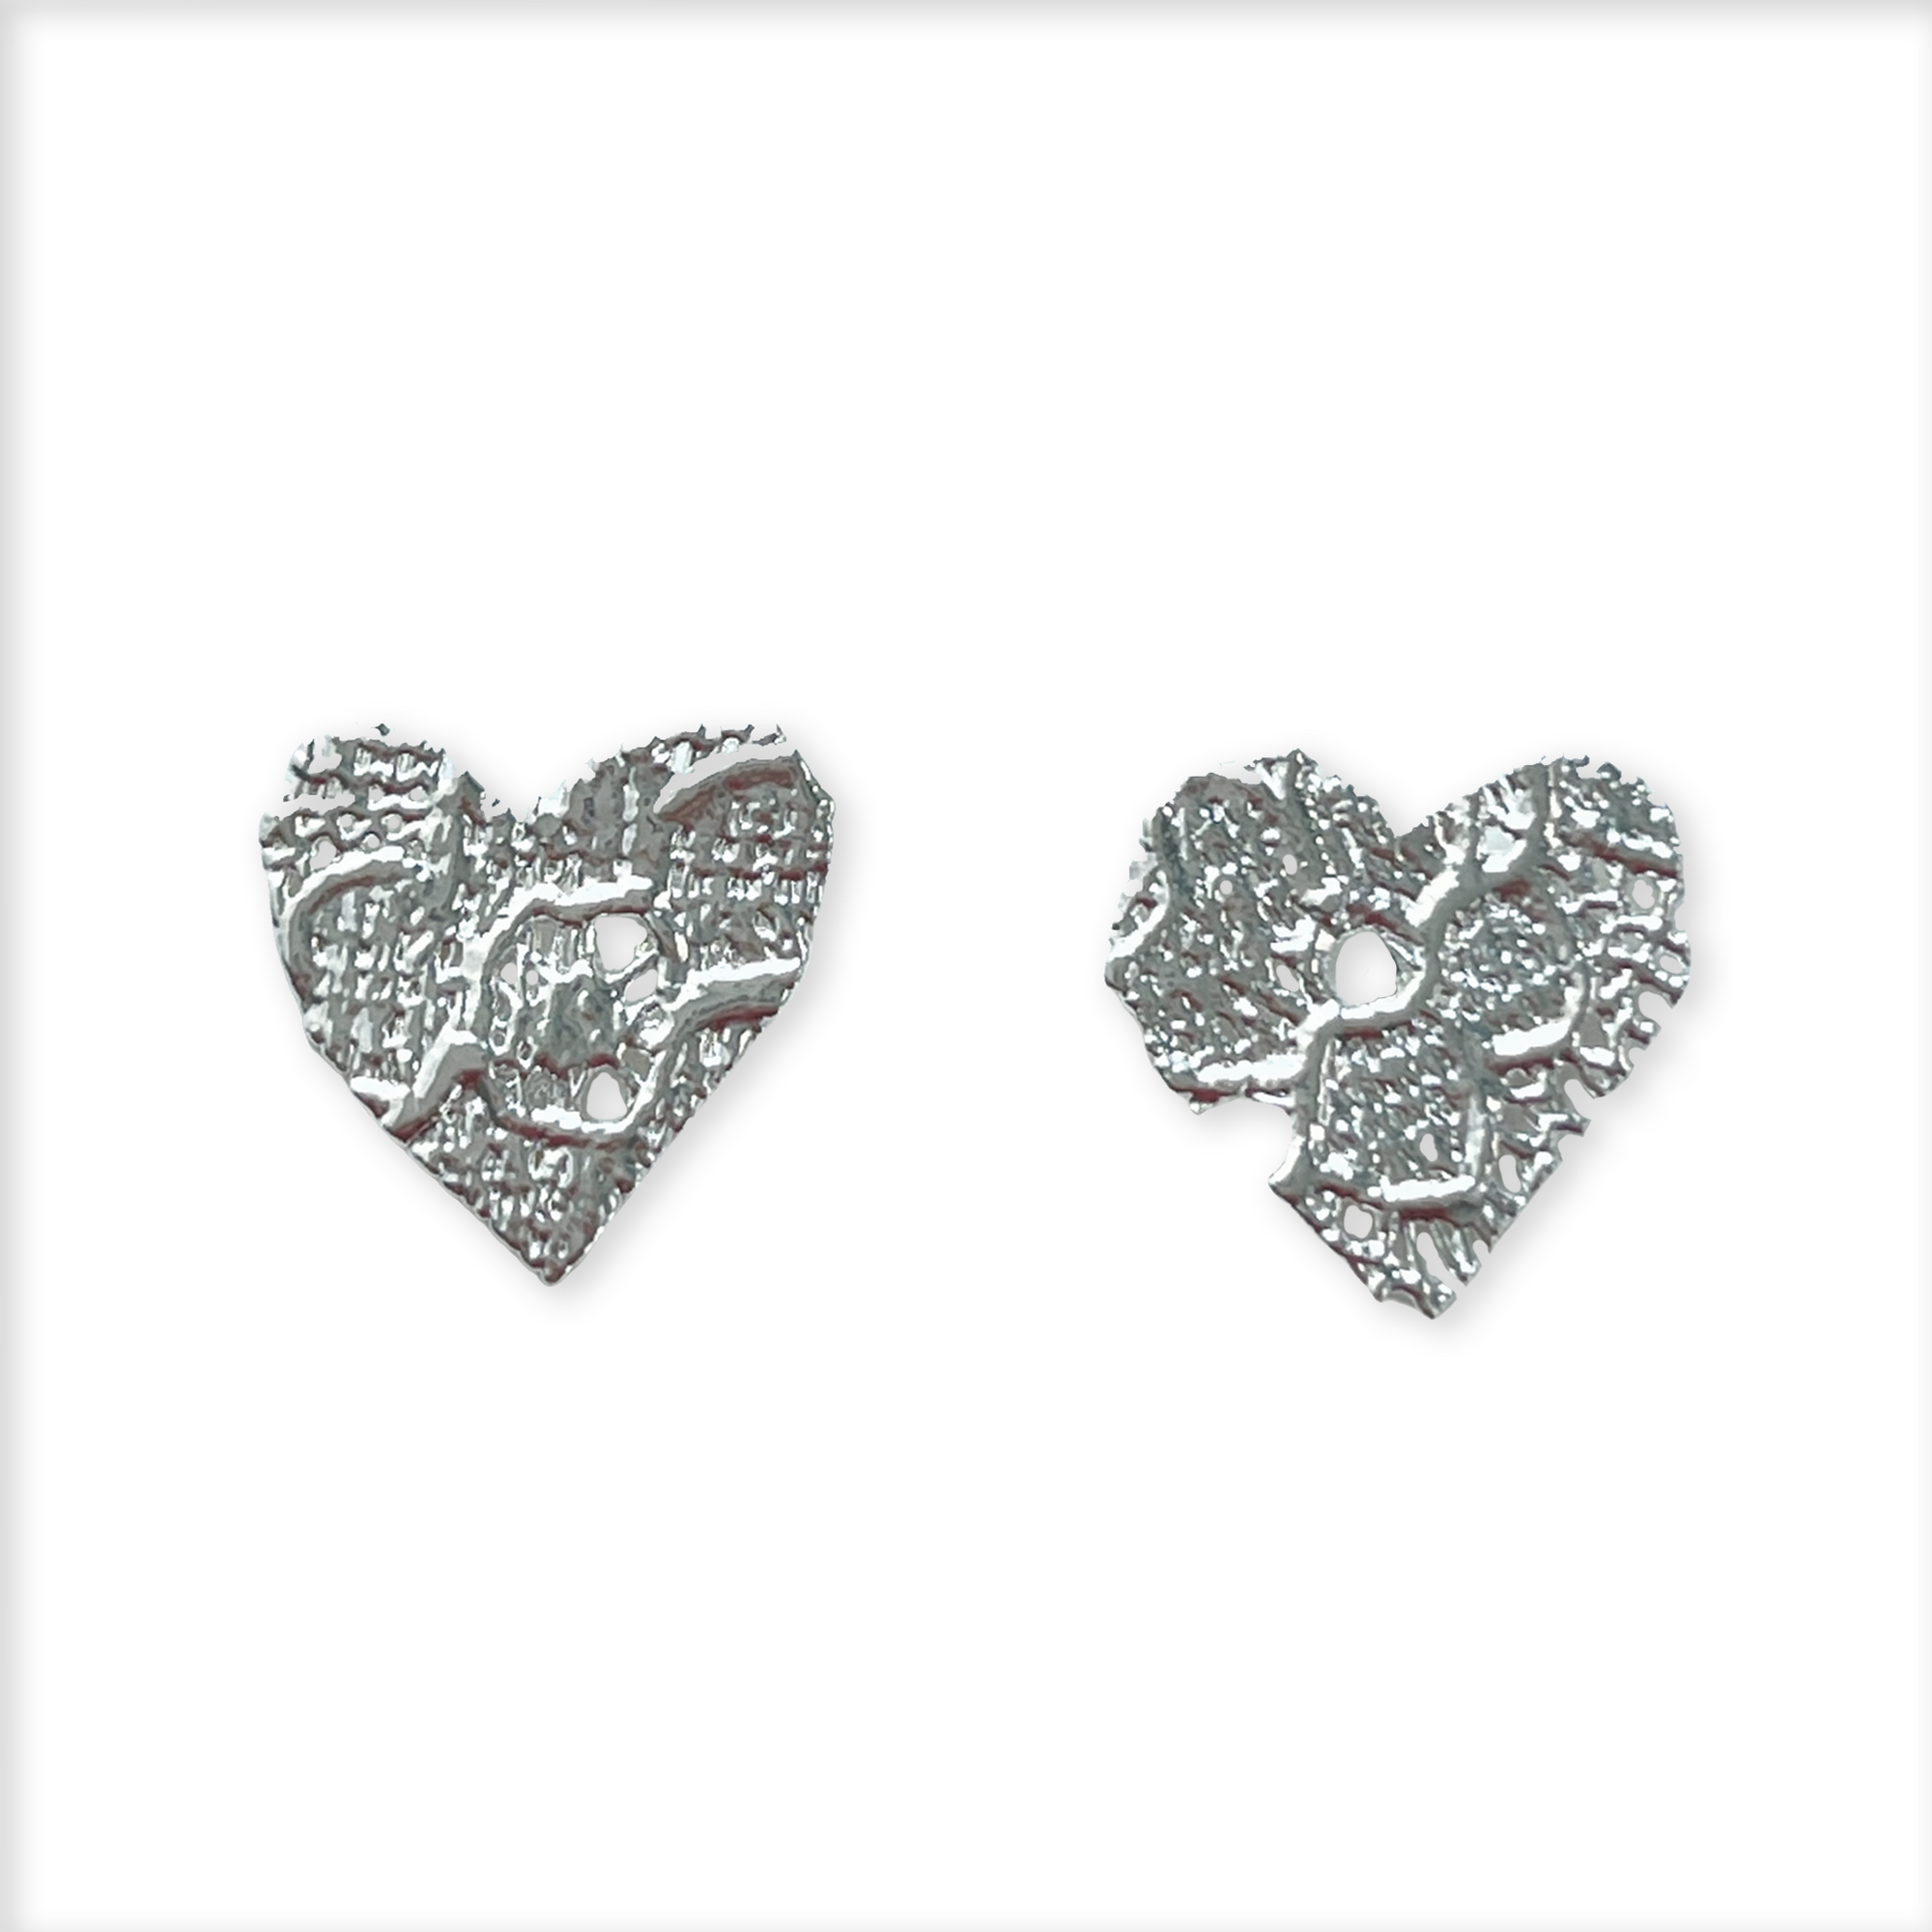 Lace heart stud earrings in rose gold.